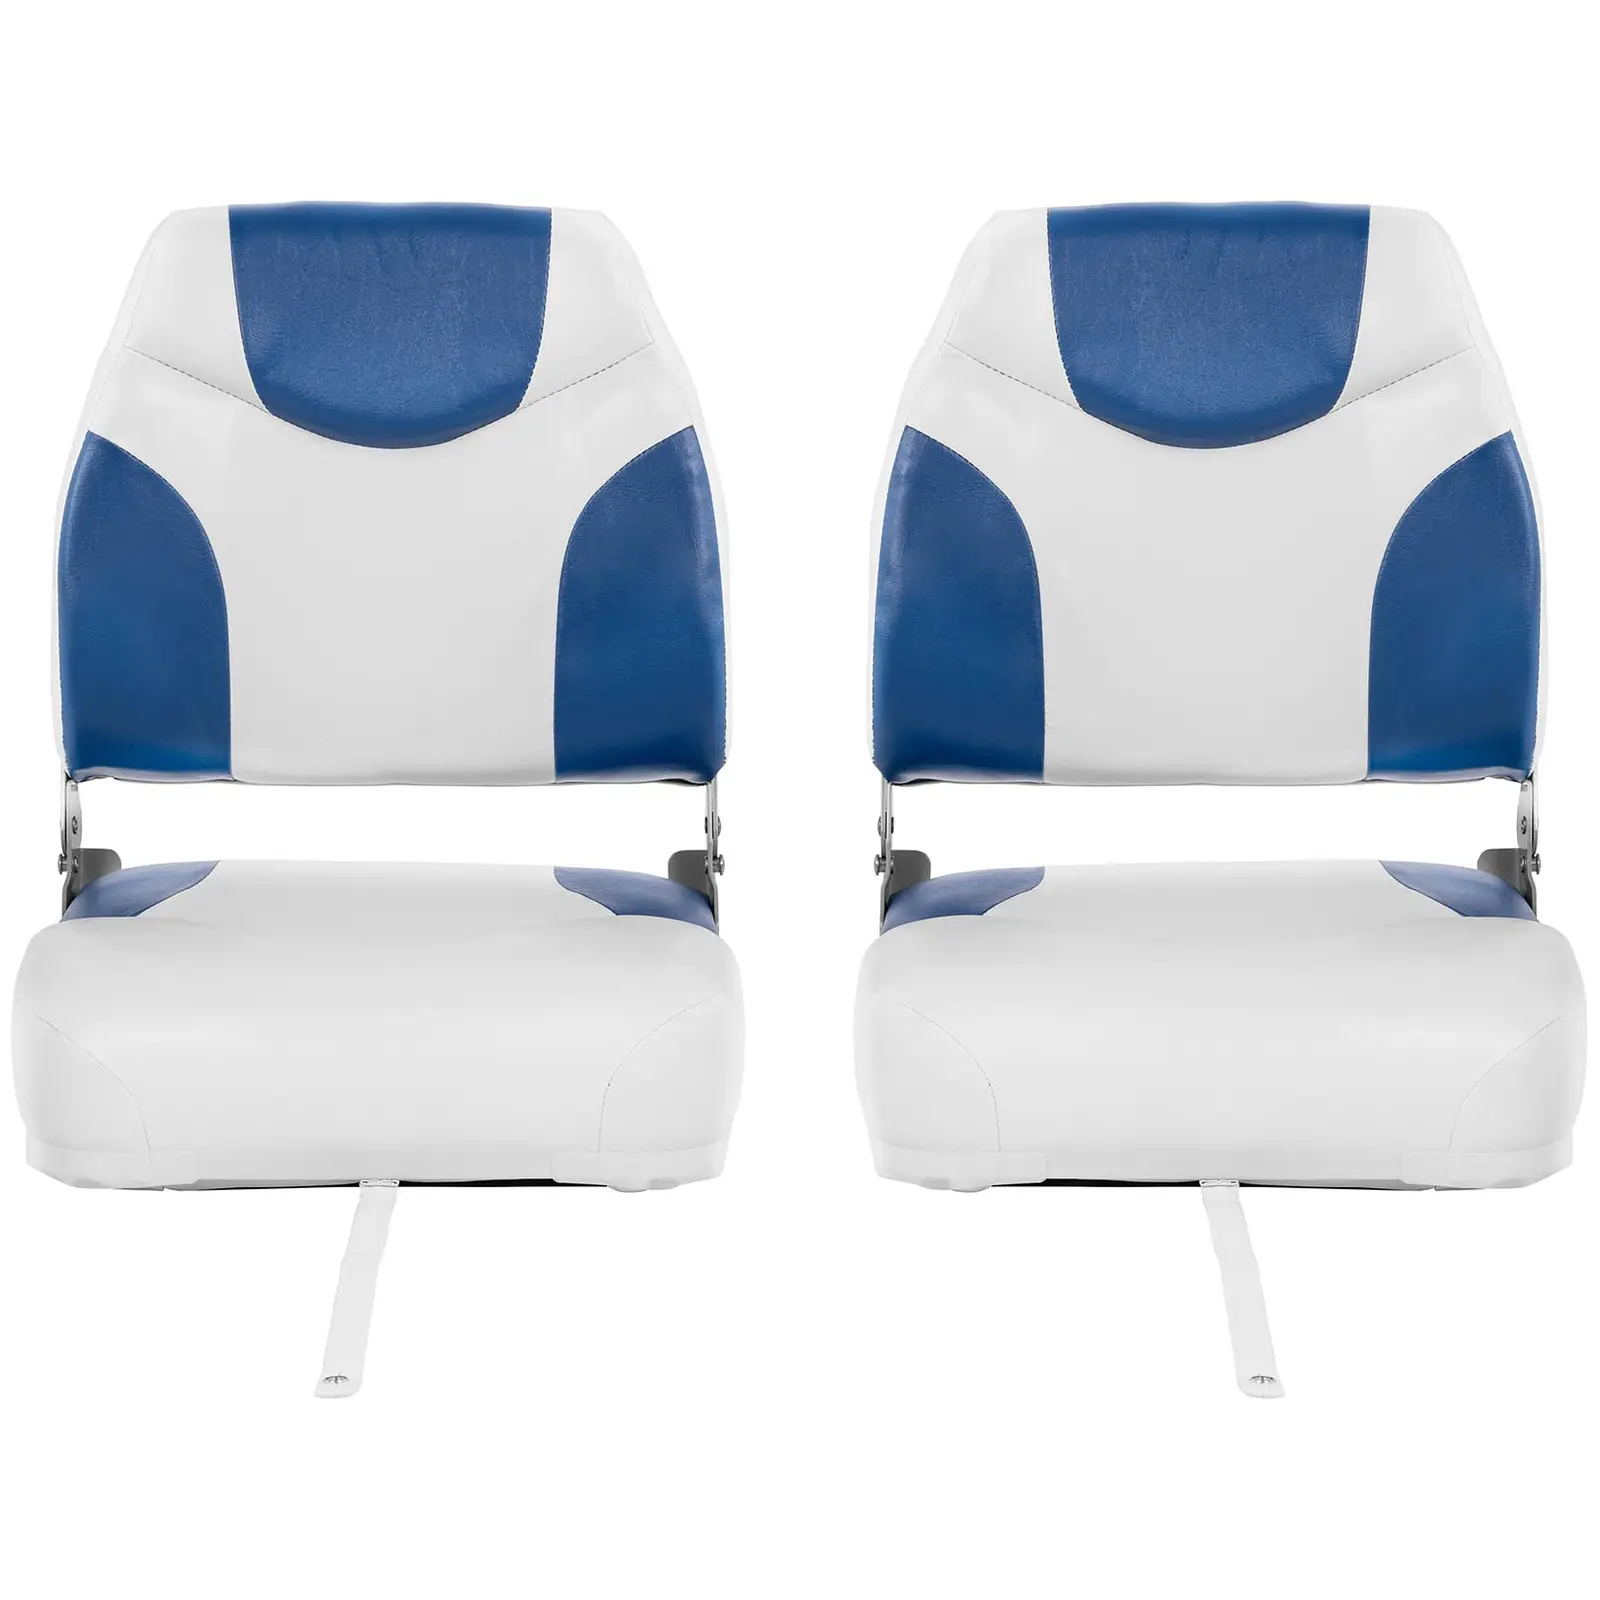 Fotele do łodzi - 2 szt. - 50x42x51 cm - biało-niebieskie